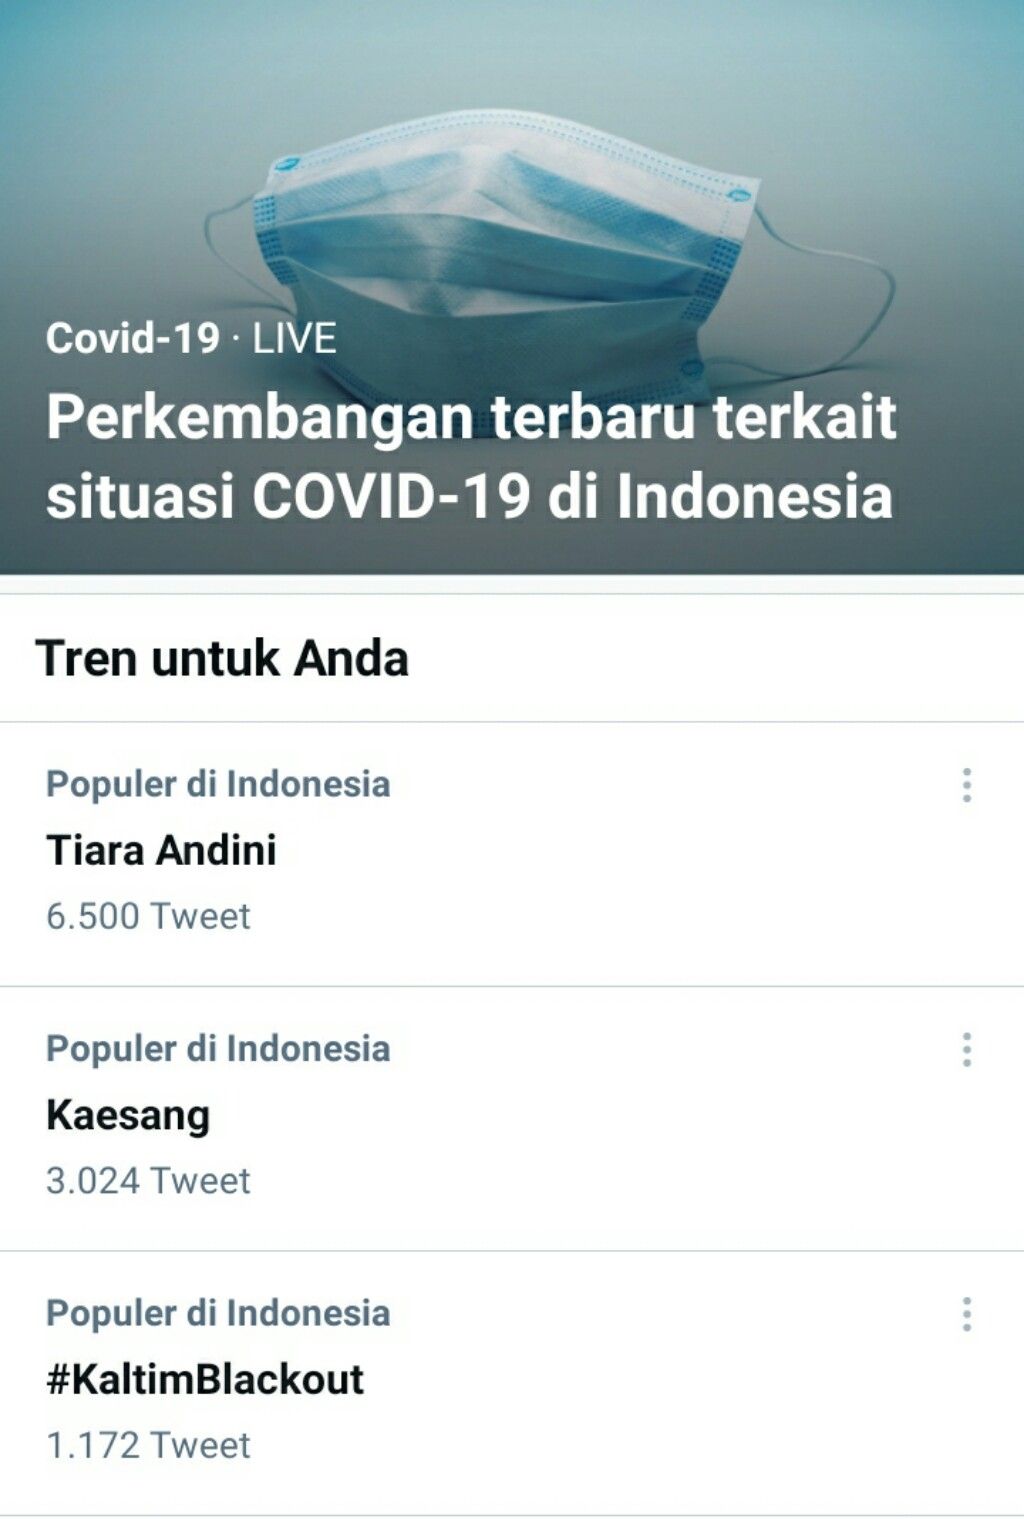 Nama Tiara Andini trending di Twitter pada Kamis malam, 27 Mei 2021